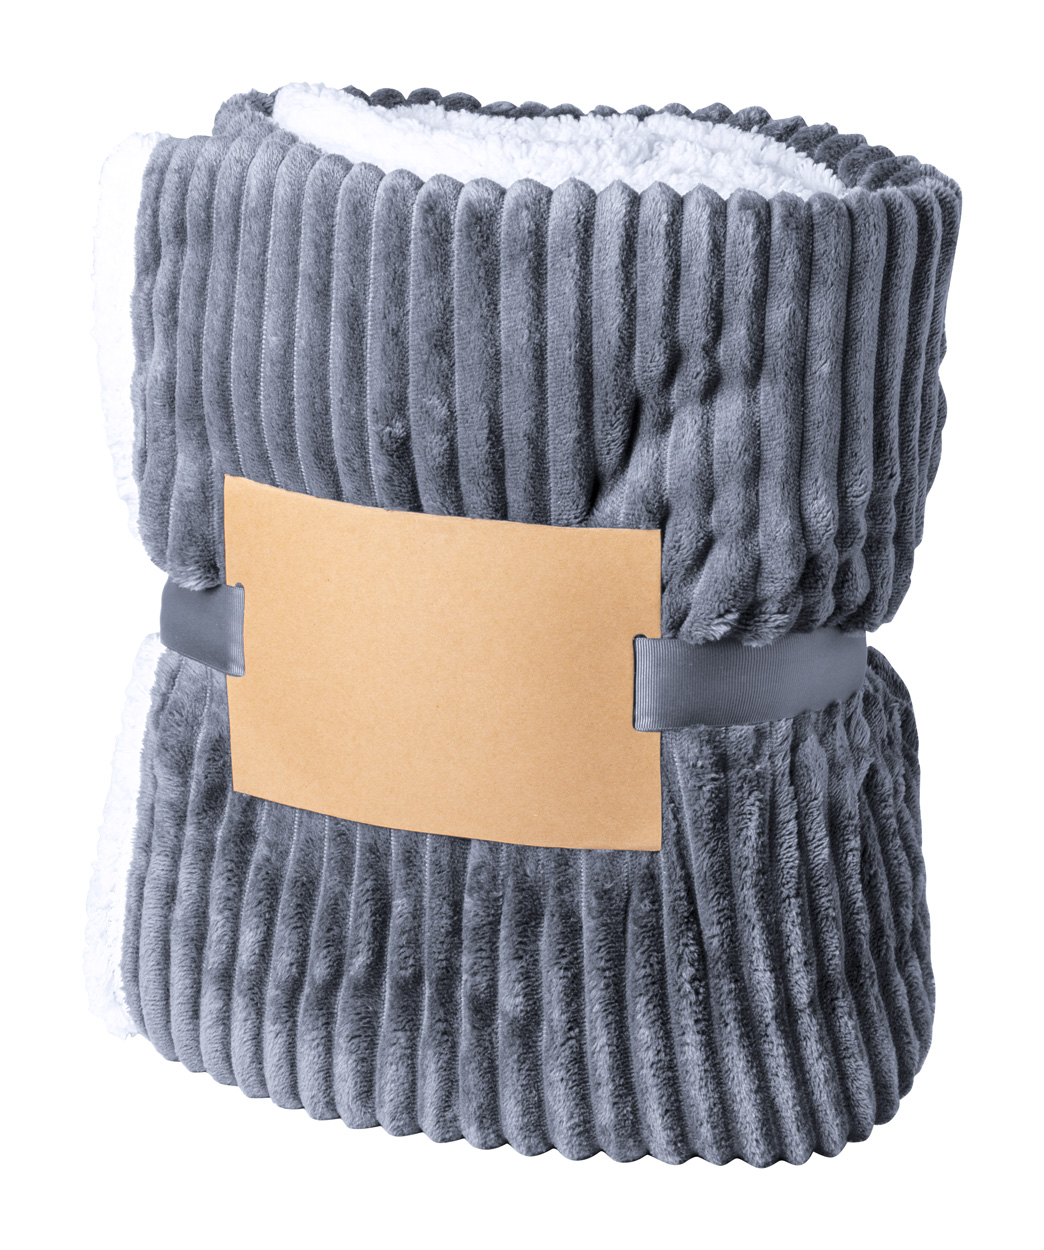 Karovix fleece blanket - grey